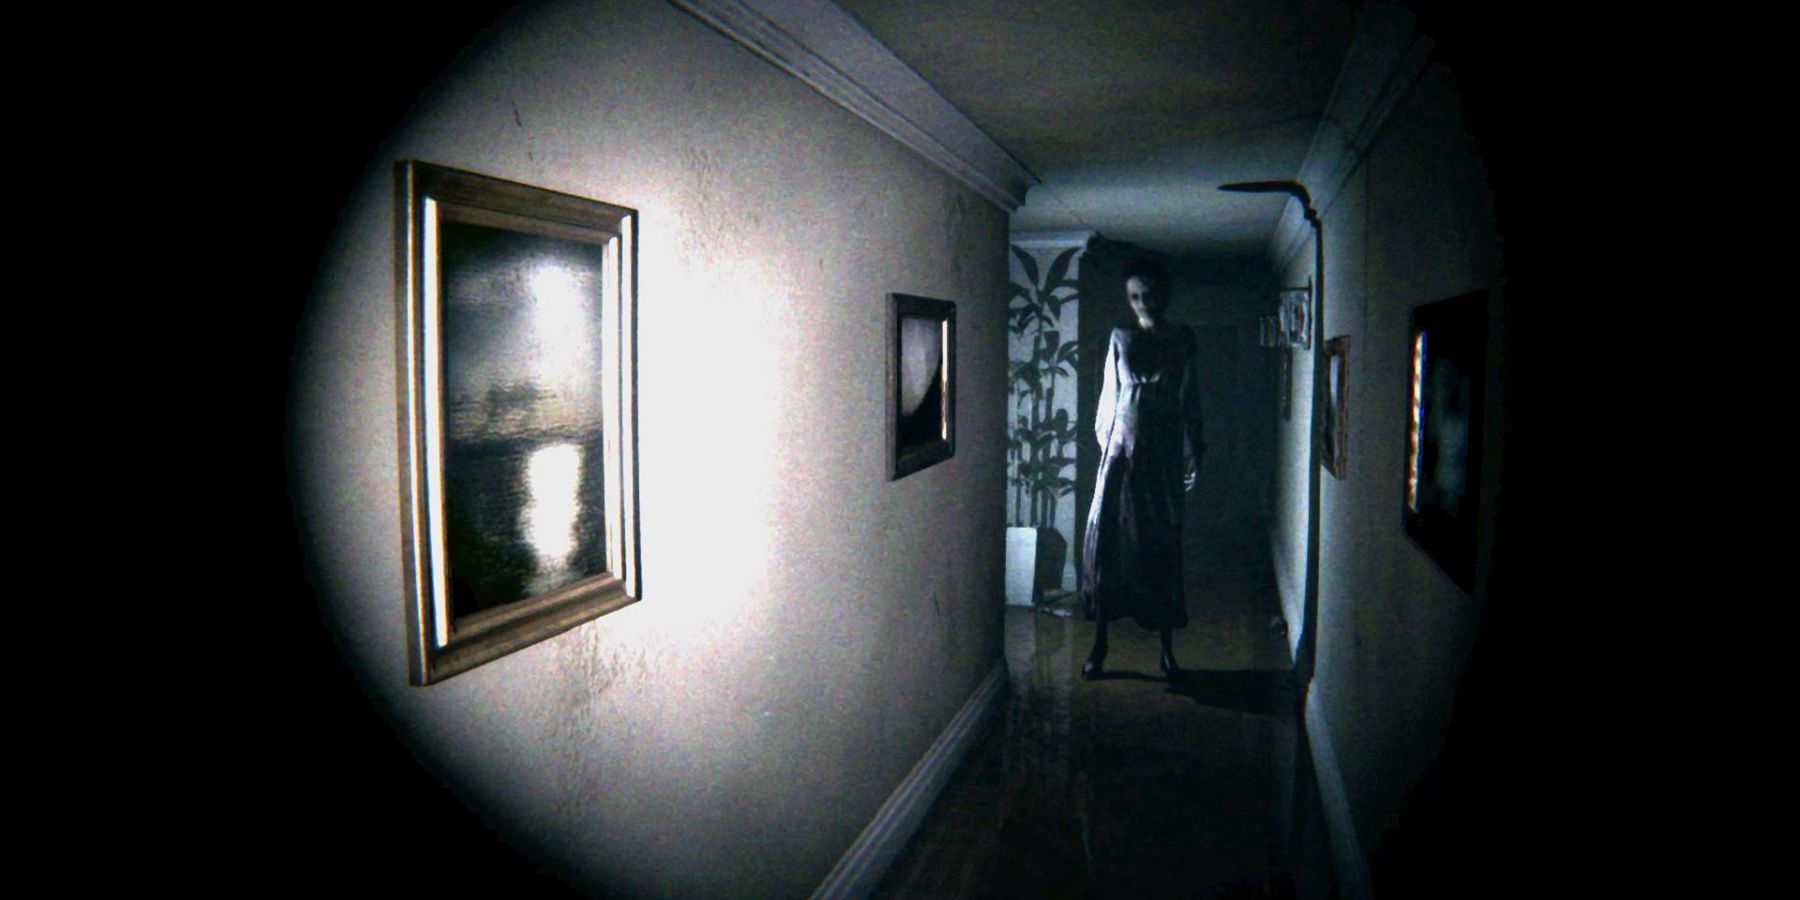 Plotka: Kojima opracowuje grę Silent Hill z funduszami Sony